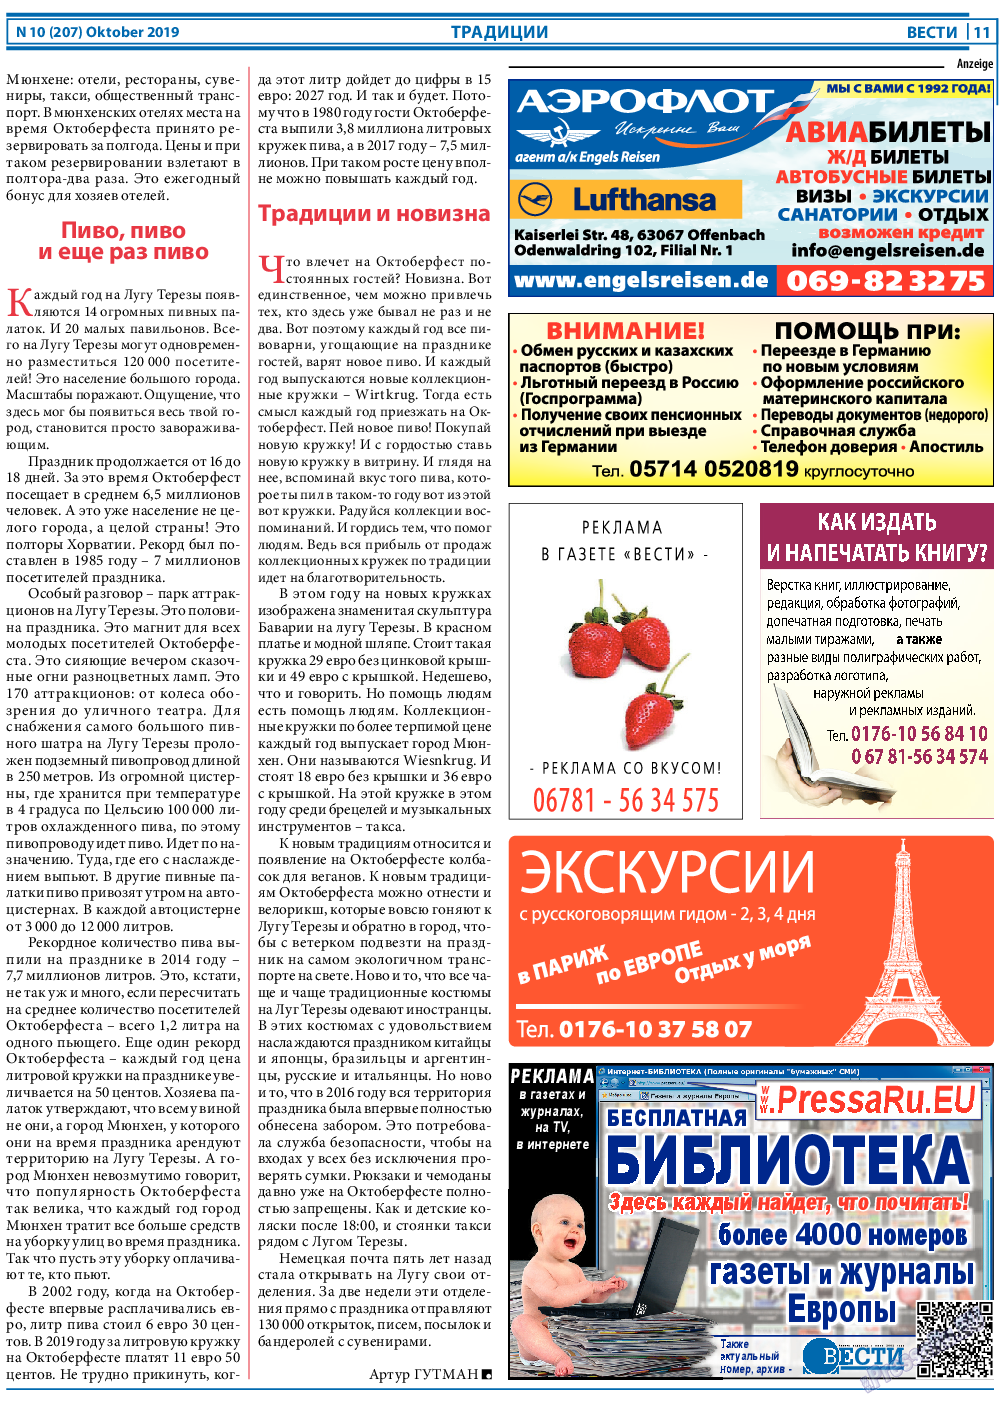 Вести, газета. 2019 №10 стр.11